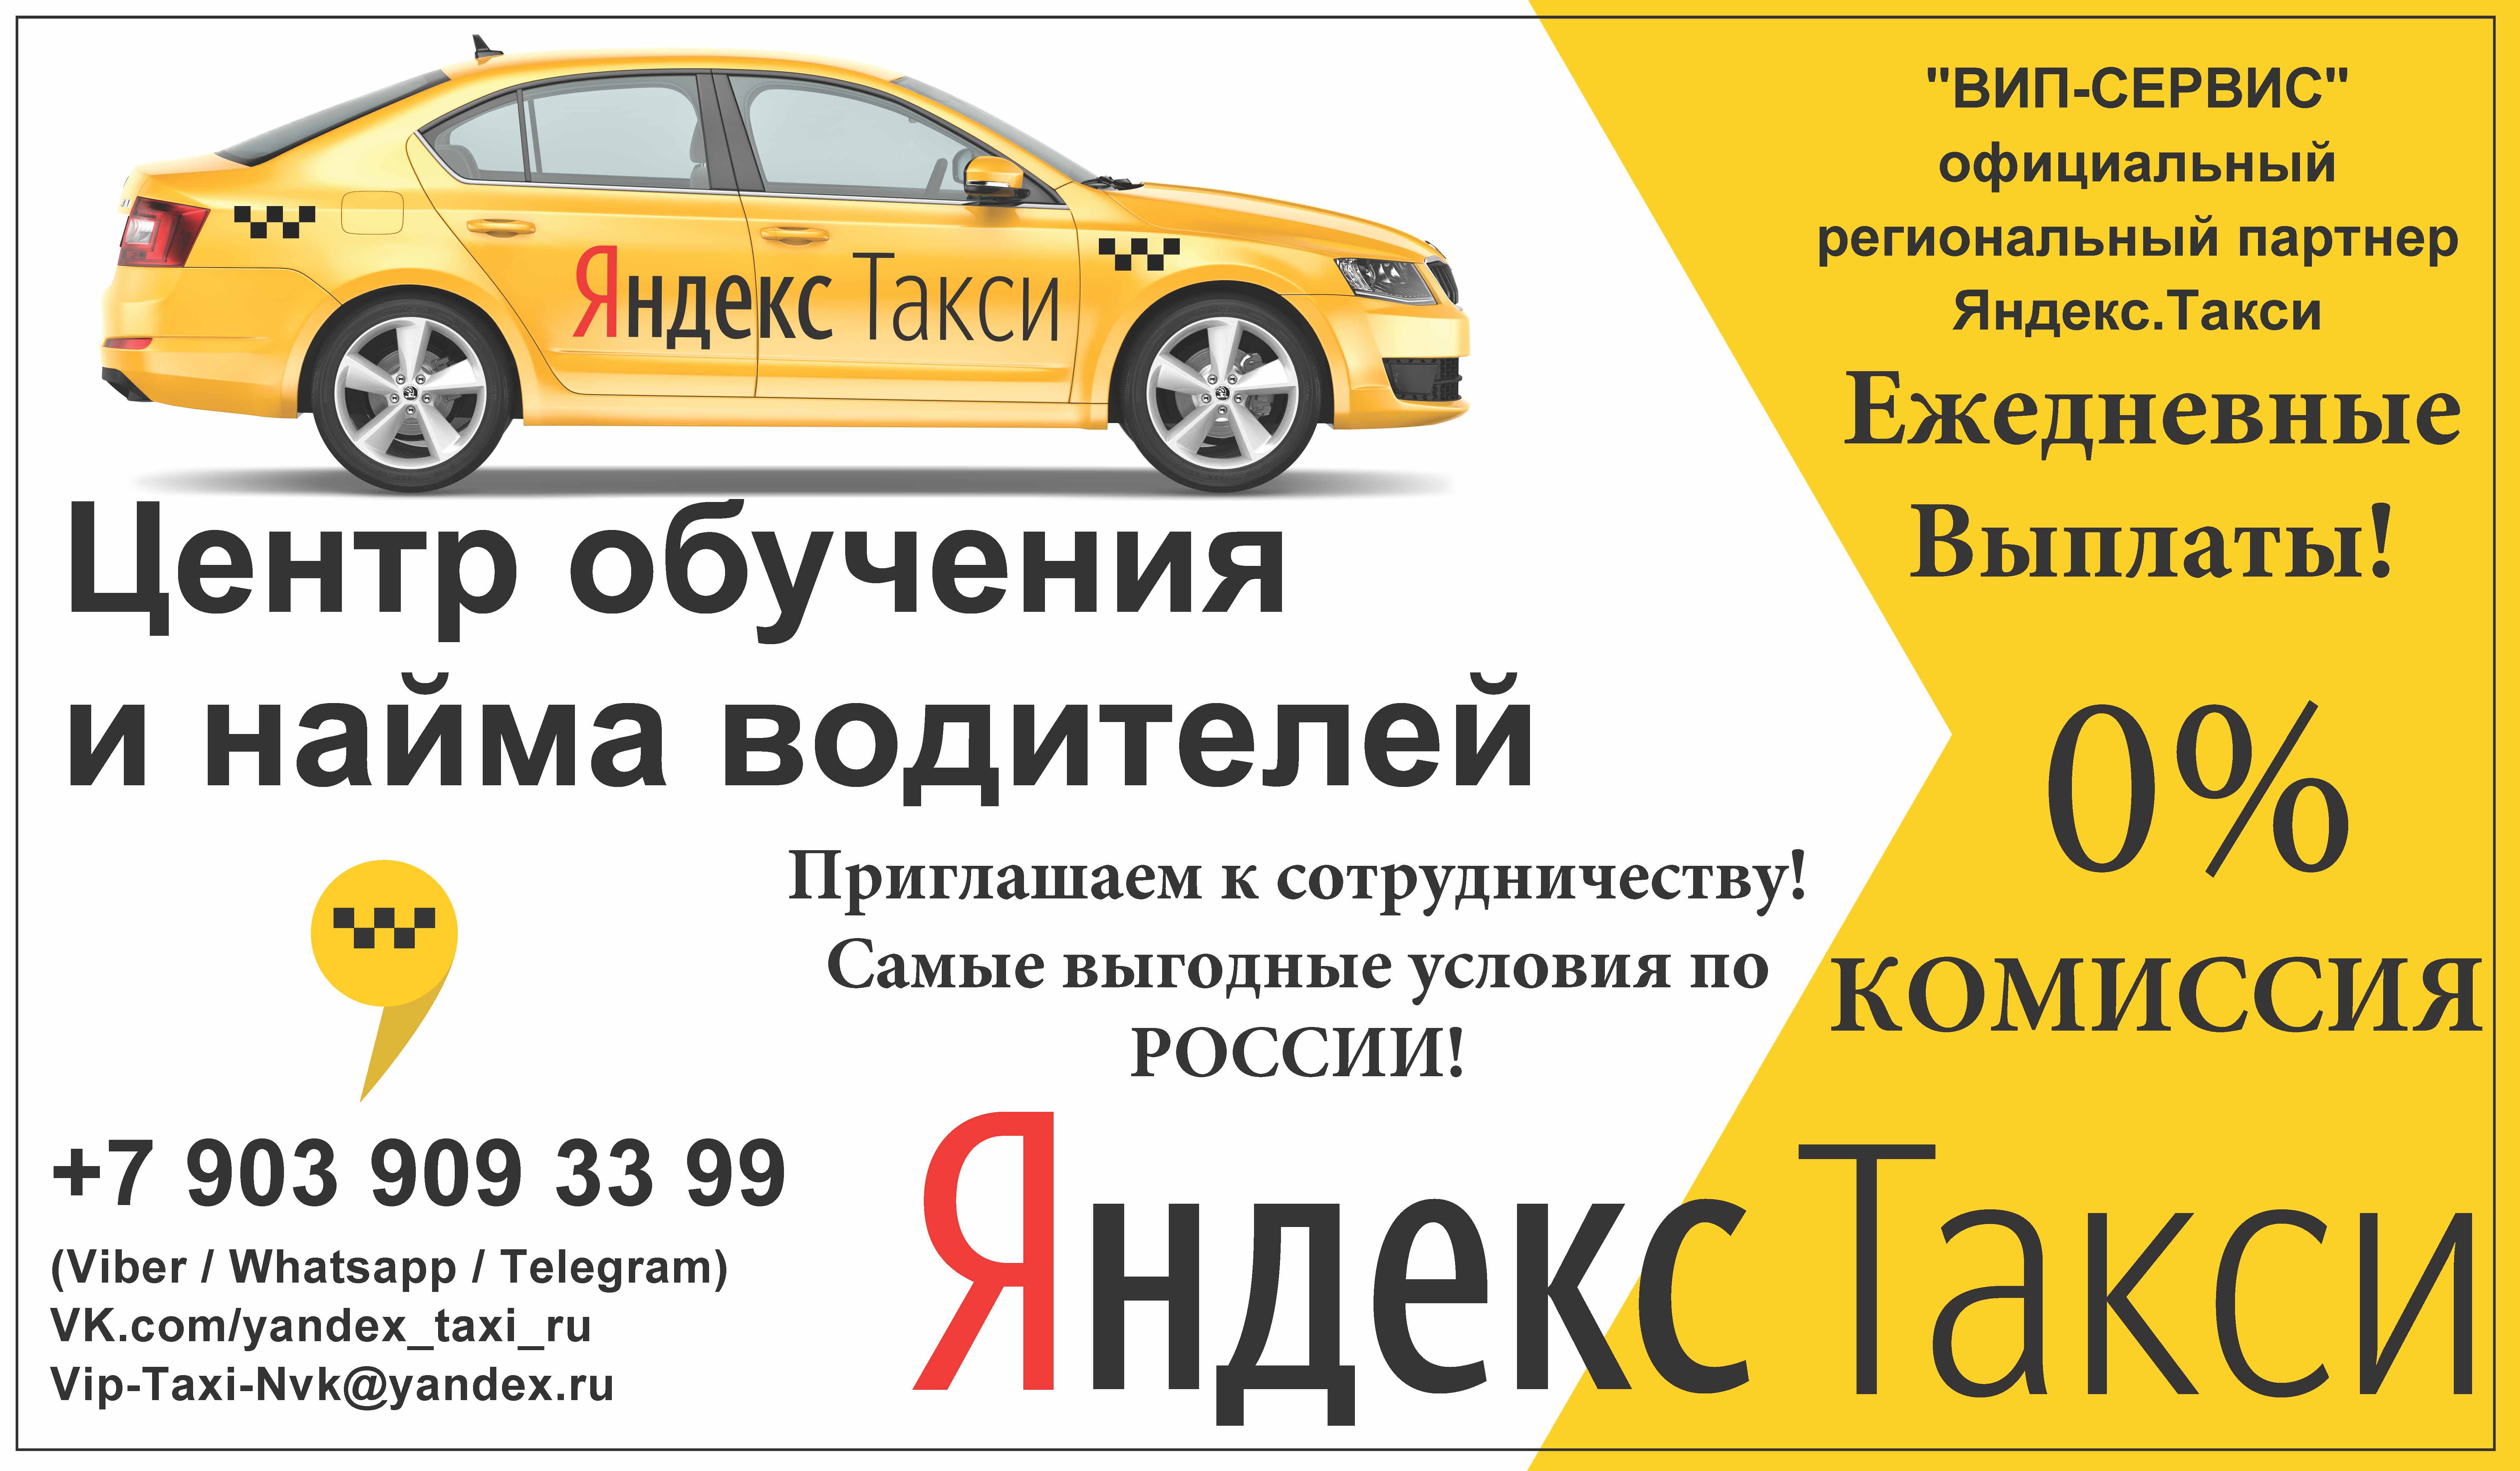 Яндекс такси реклама